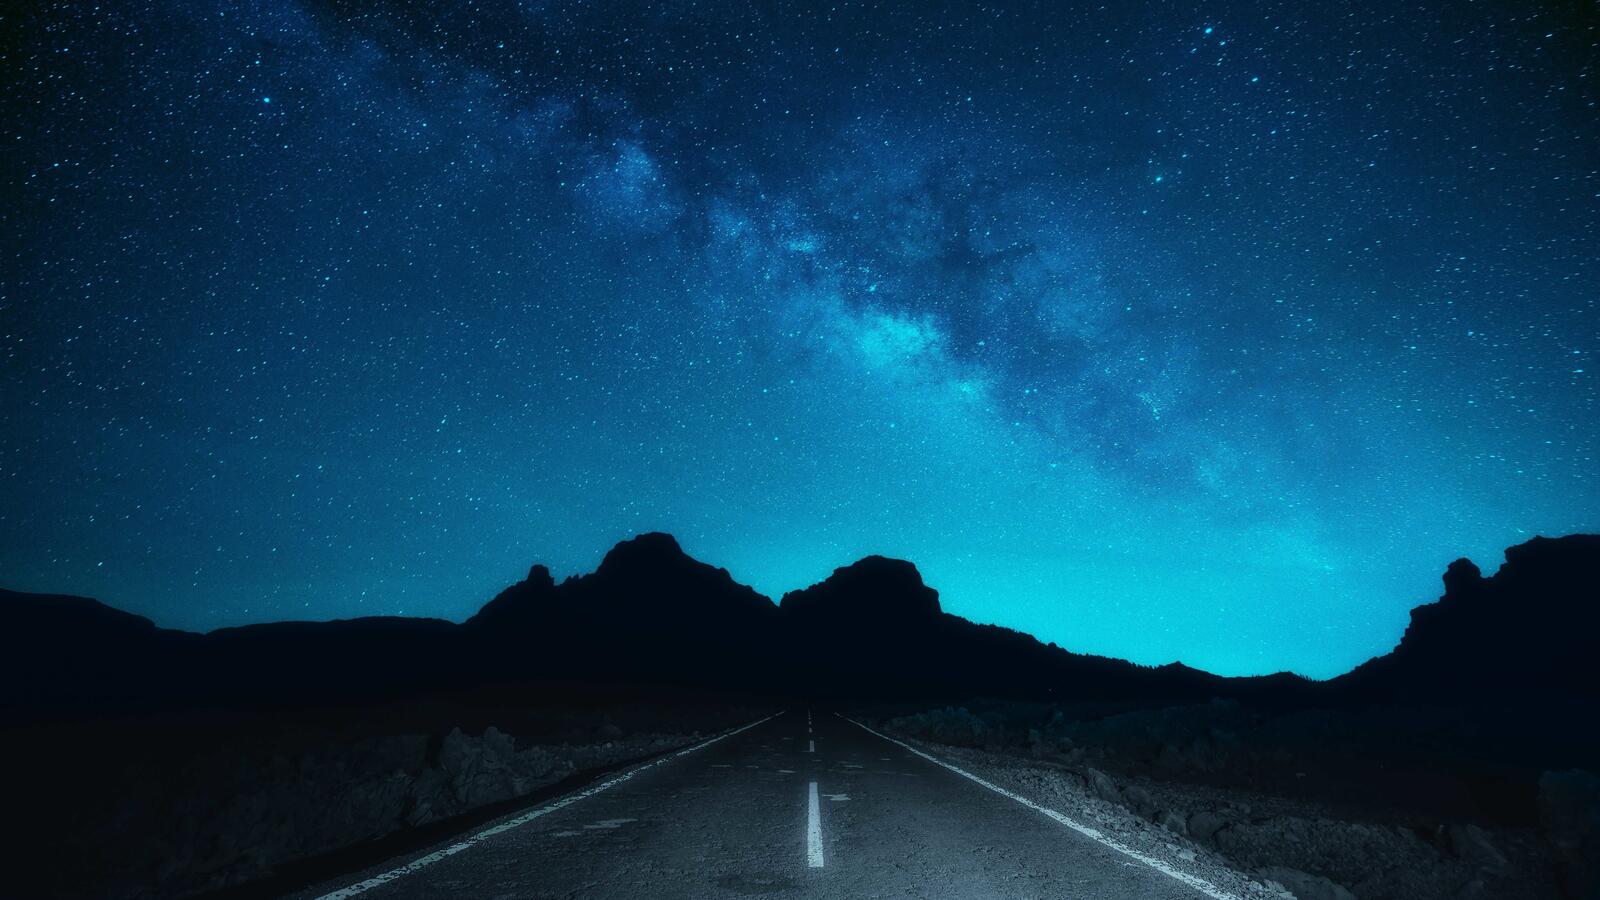 Бесплатное фото Ночное небо в звездах с хорошо видным млечным путем